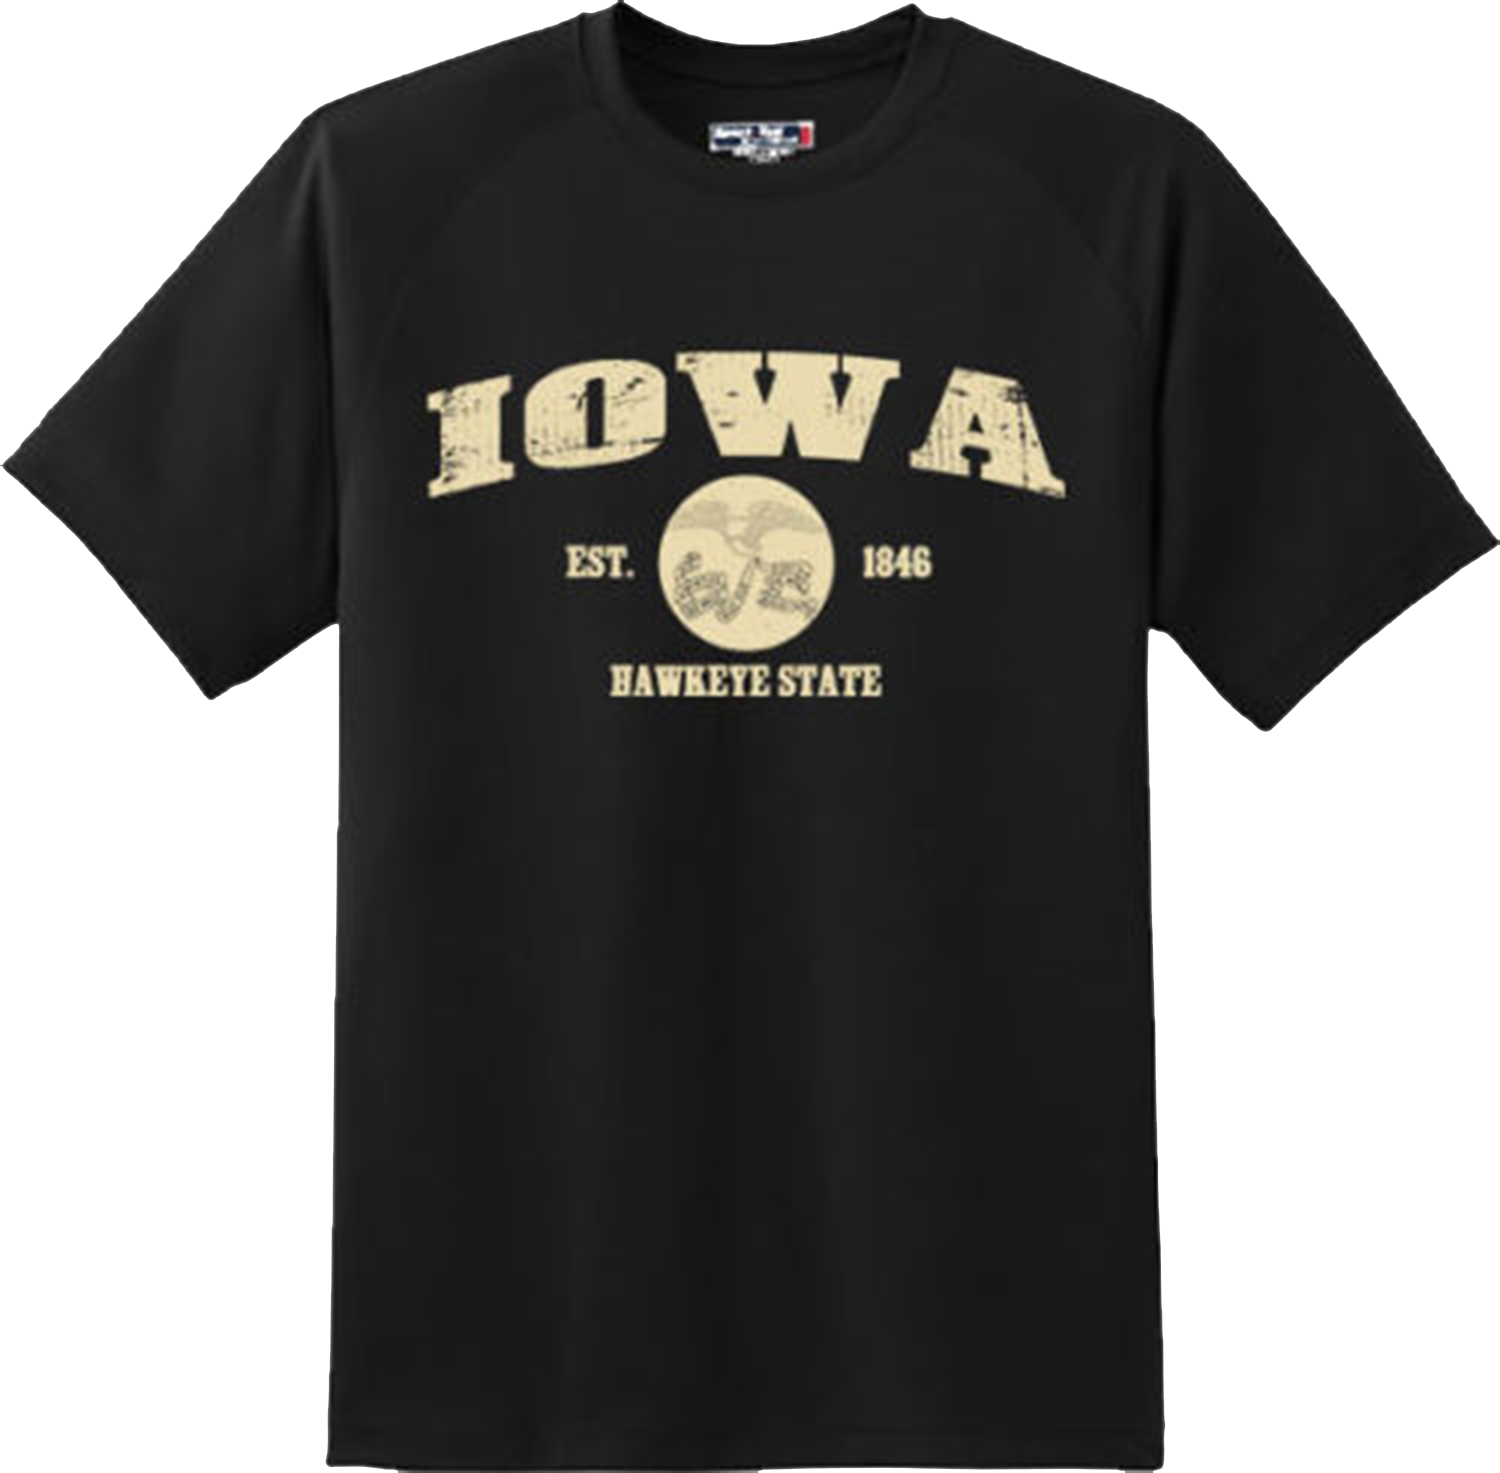 Iowa State Vintage Retro Hometown America Gift T Shirt New Graphic Tee